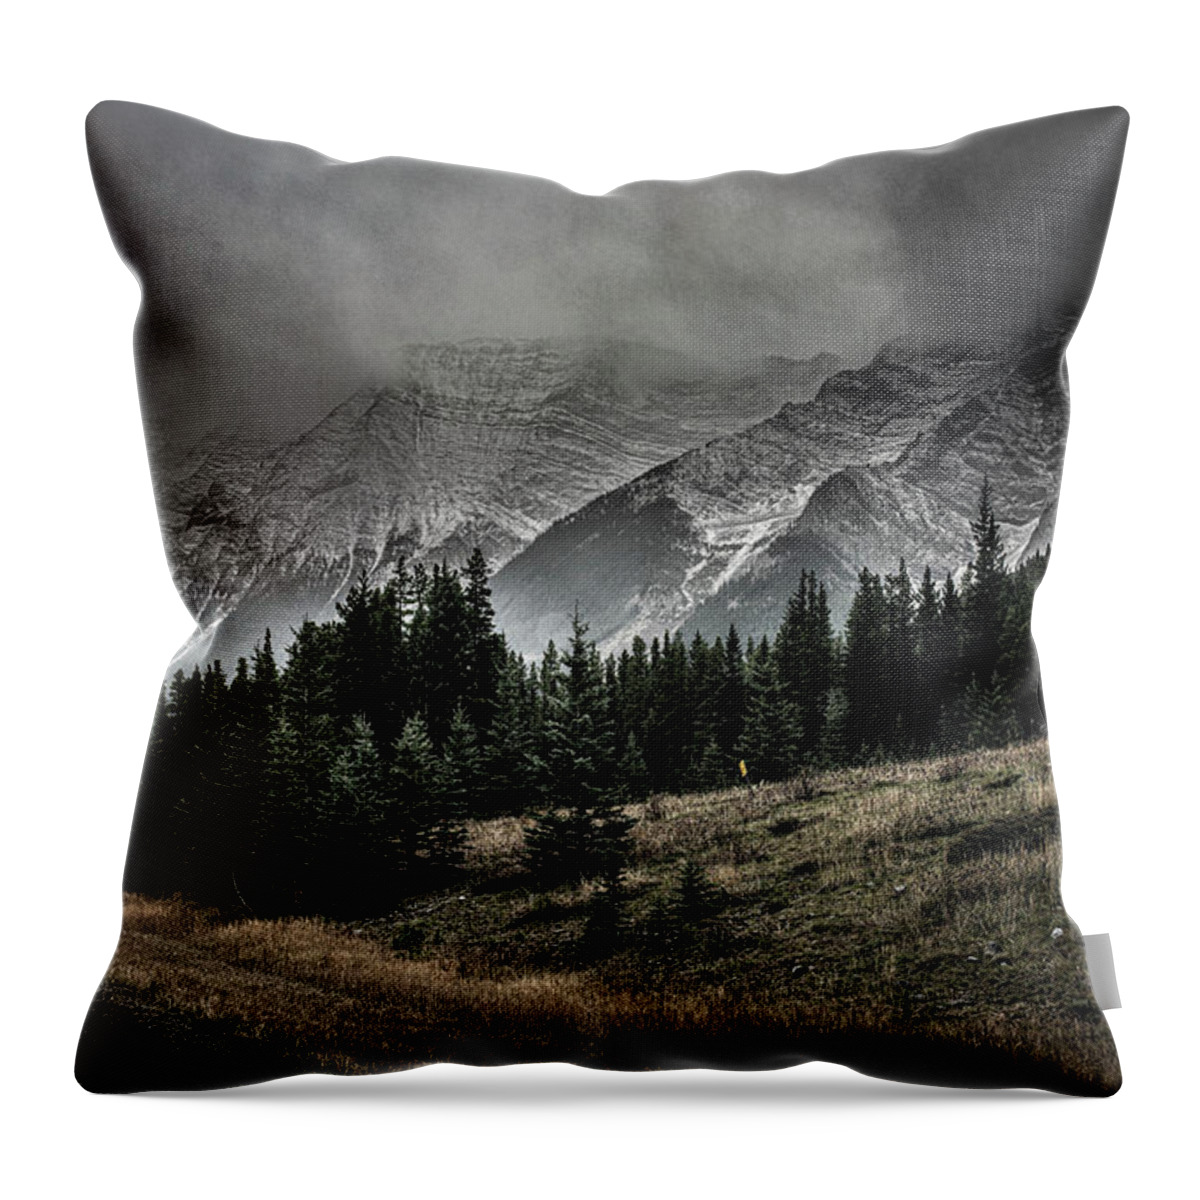 Digital Art Throw Pillow featuring the digital art Highwood Pass by Jerald Blackstock